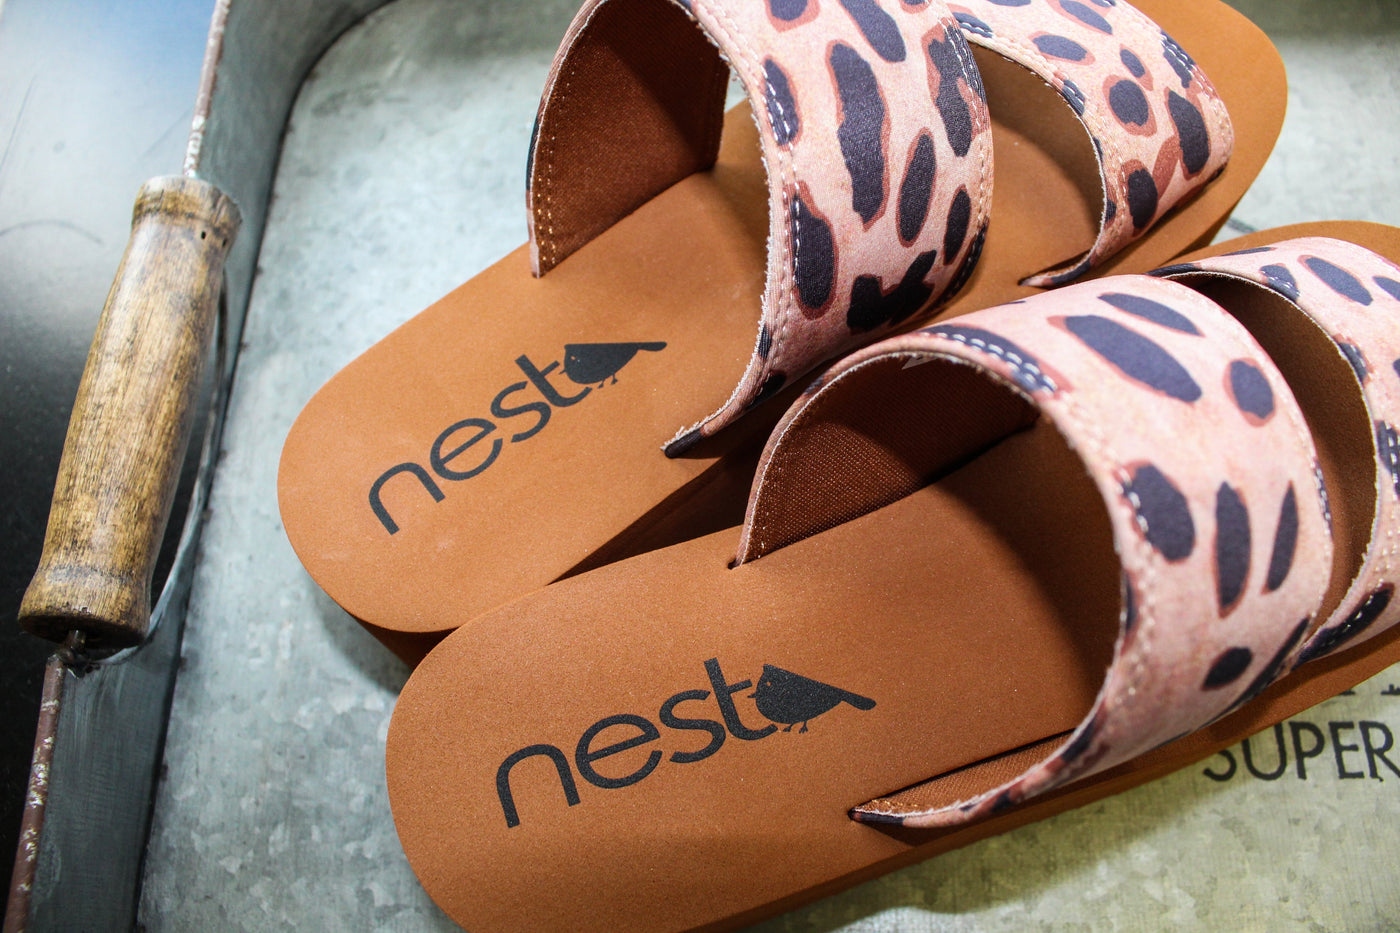 Women's Platform Sandal 2 Band Leopard by Nest Shoes